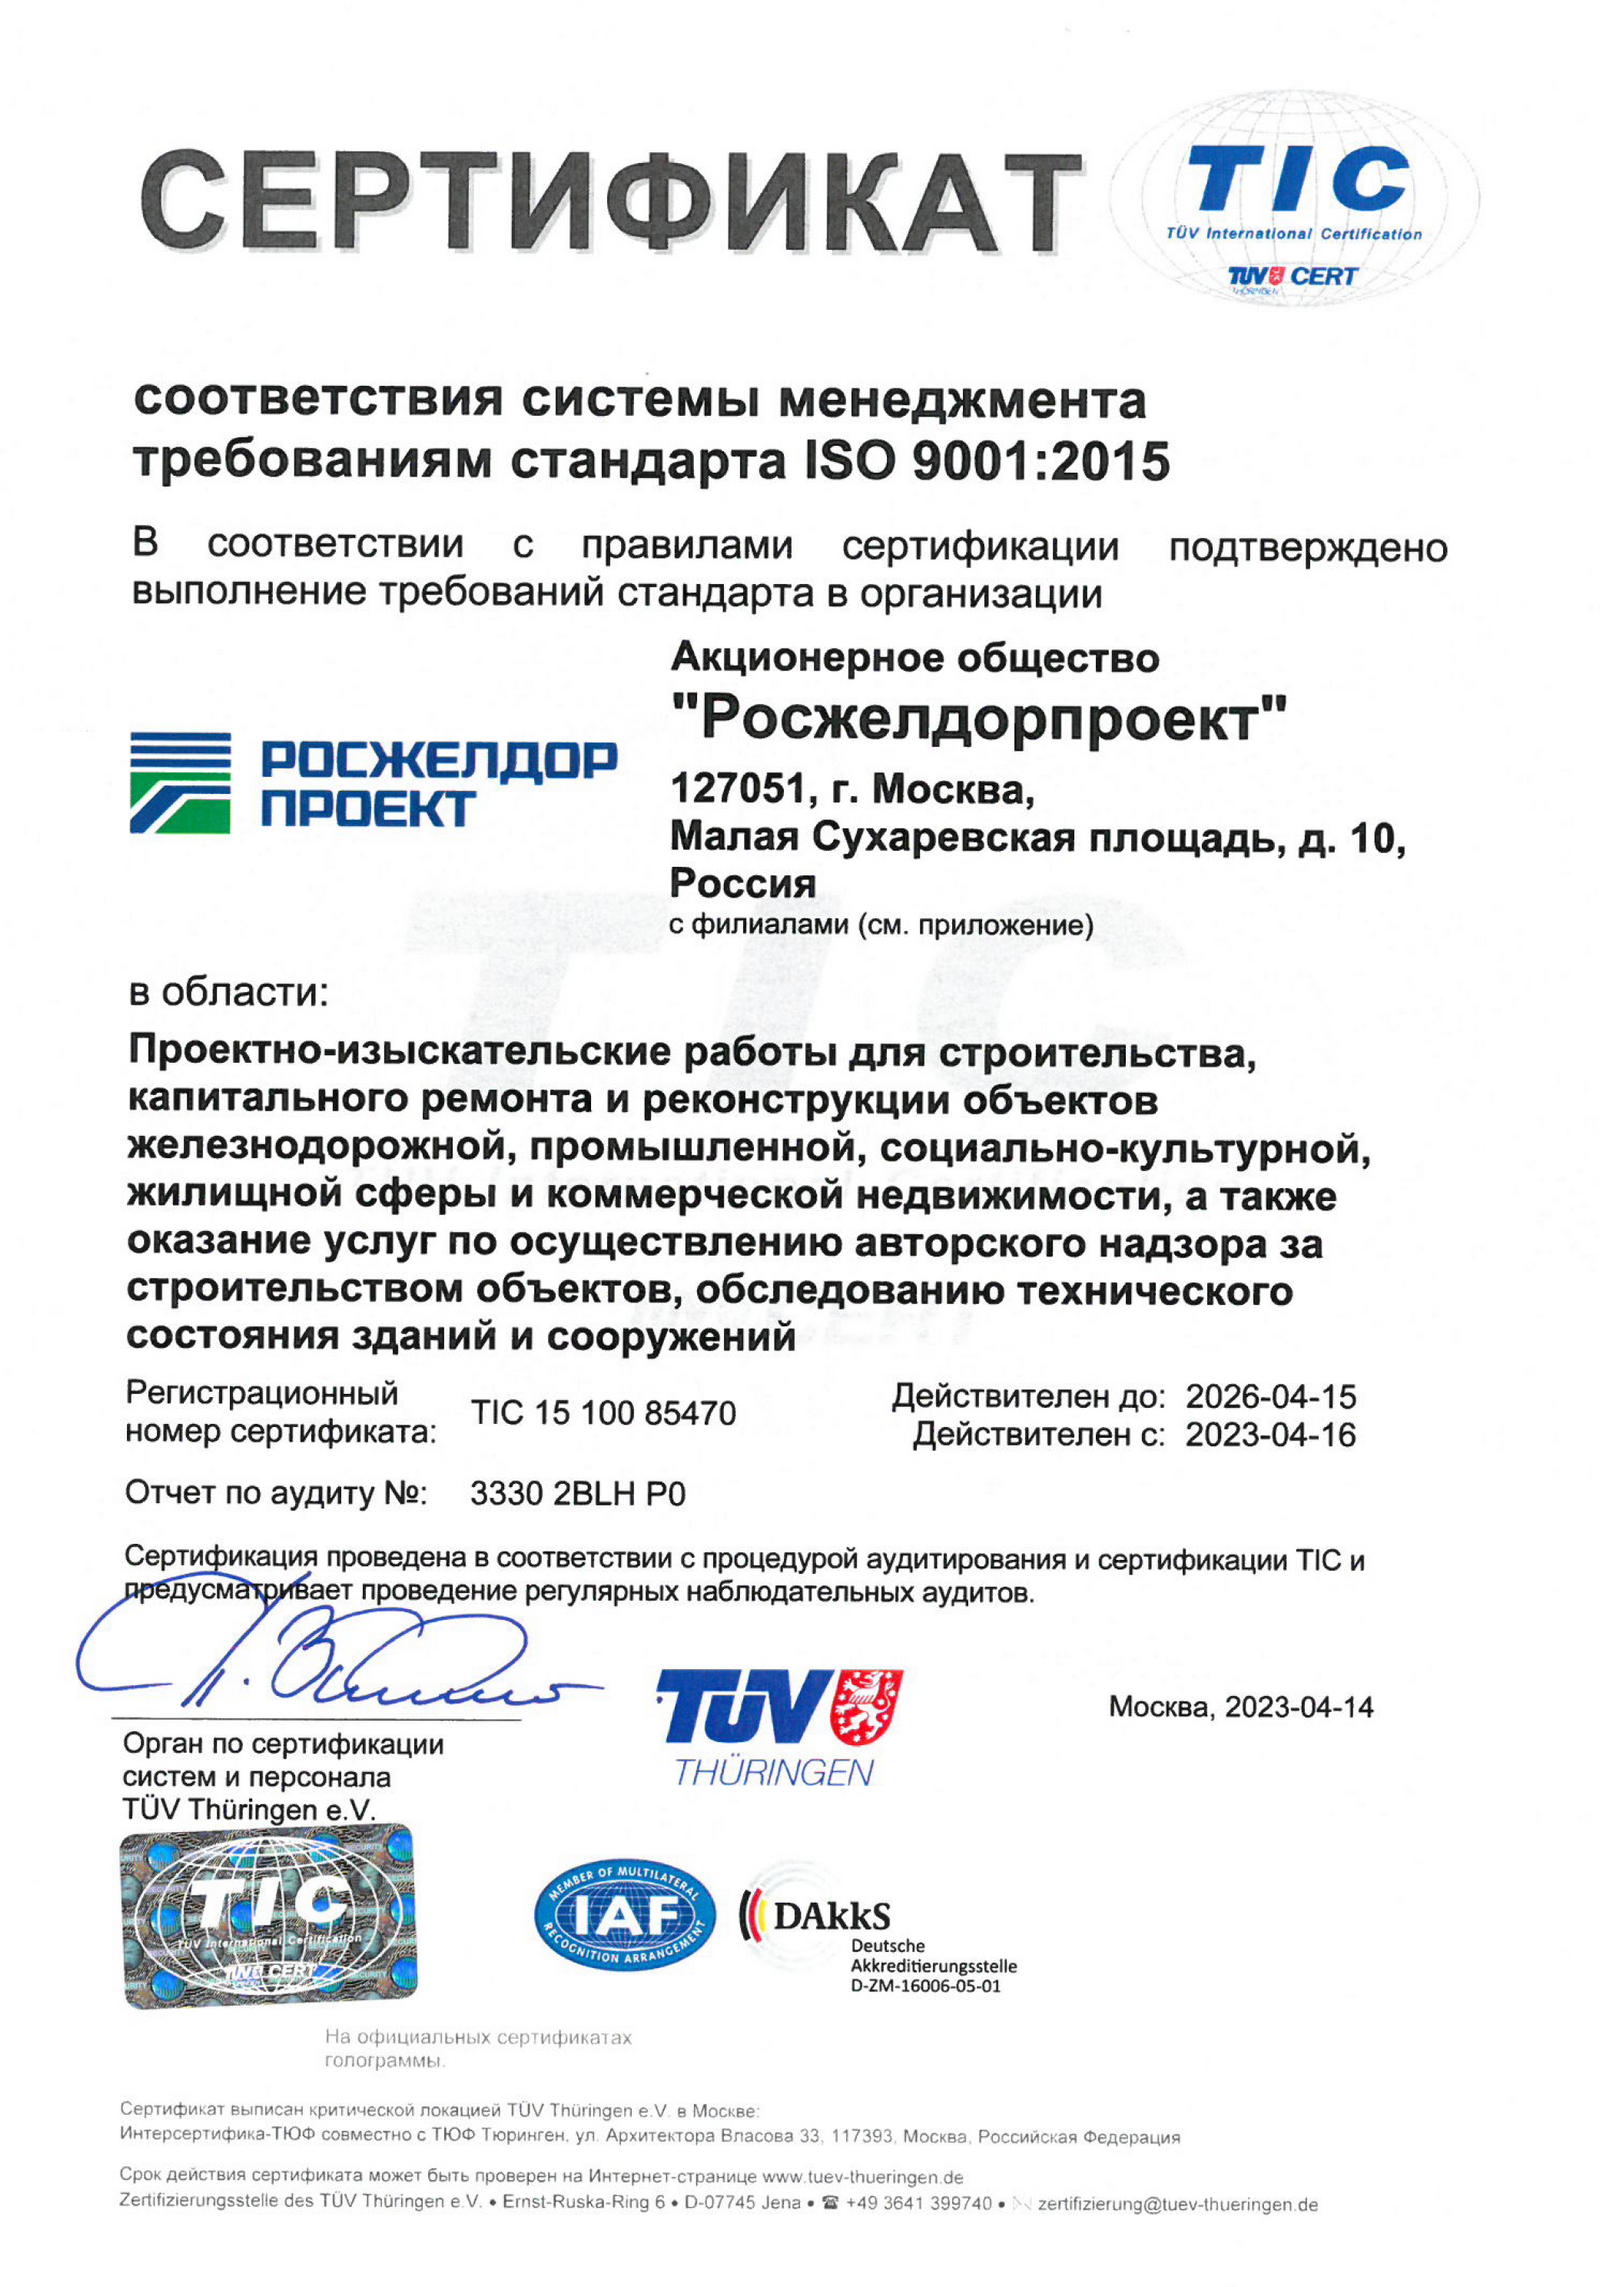 Сертификат соответствия системы менеджмента требованиям стандарта ISO 9001:2015 (№ TIC 15 100 85470) и приложение